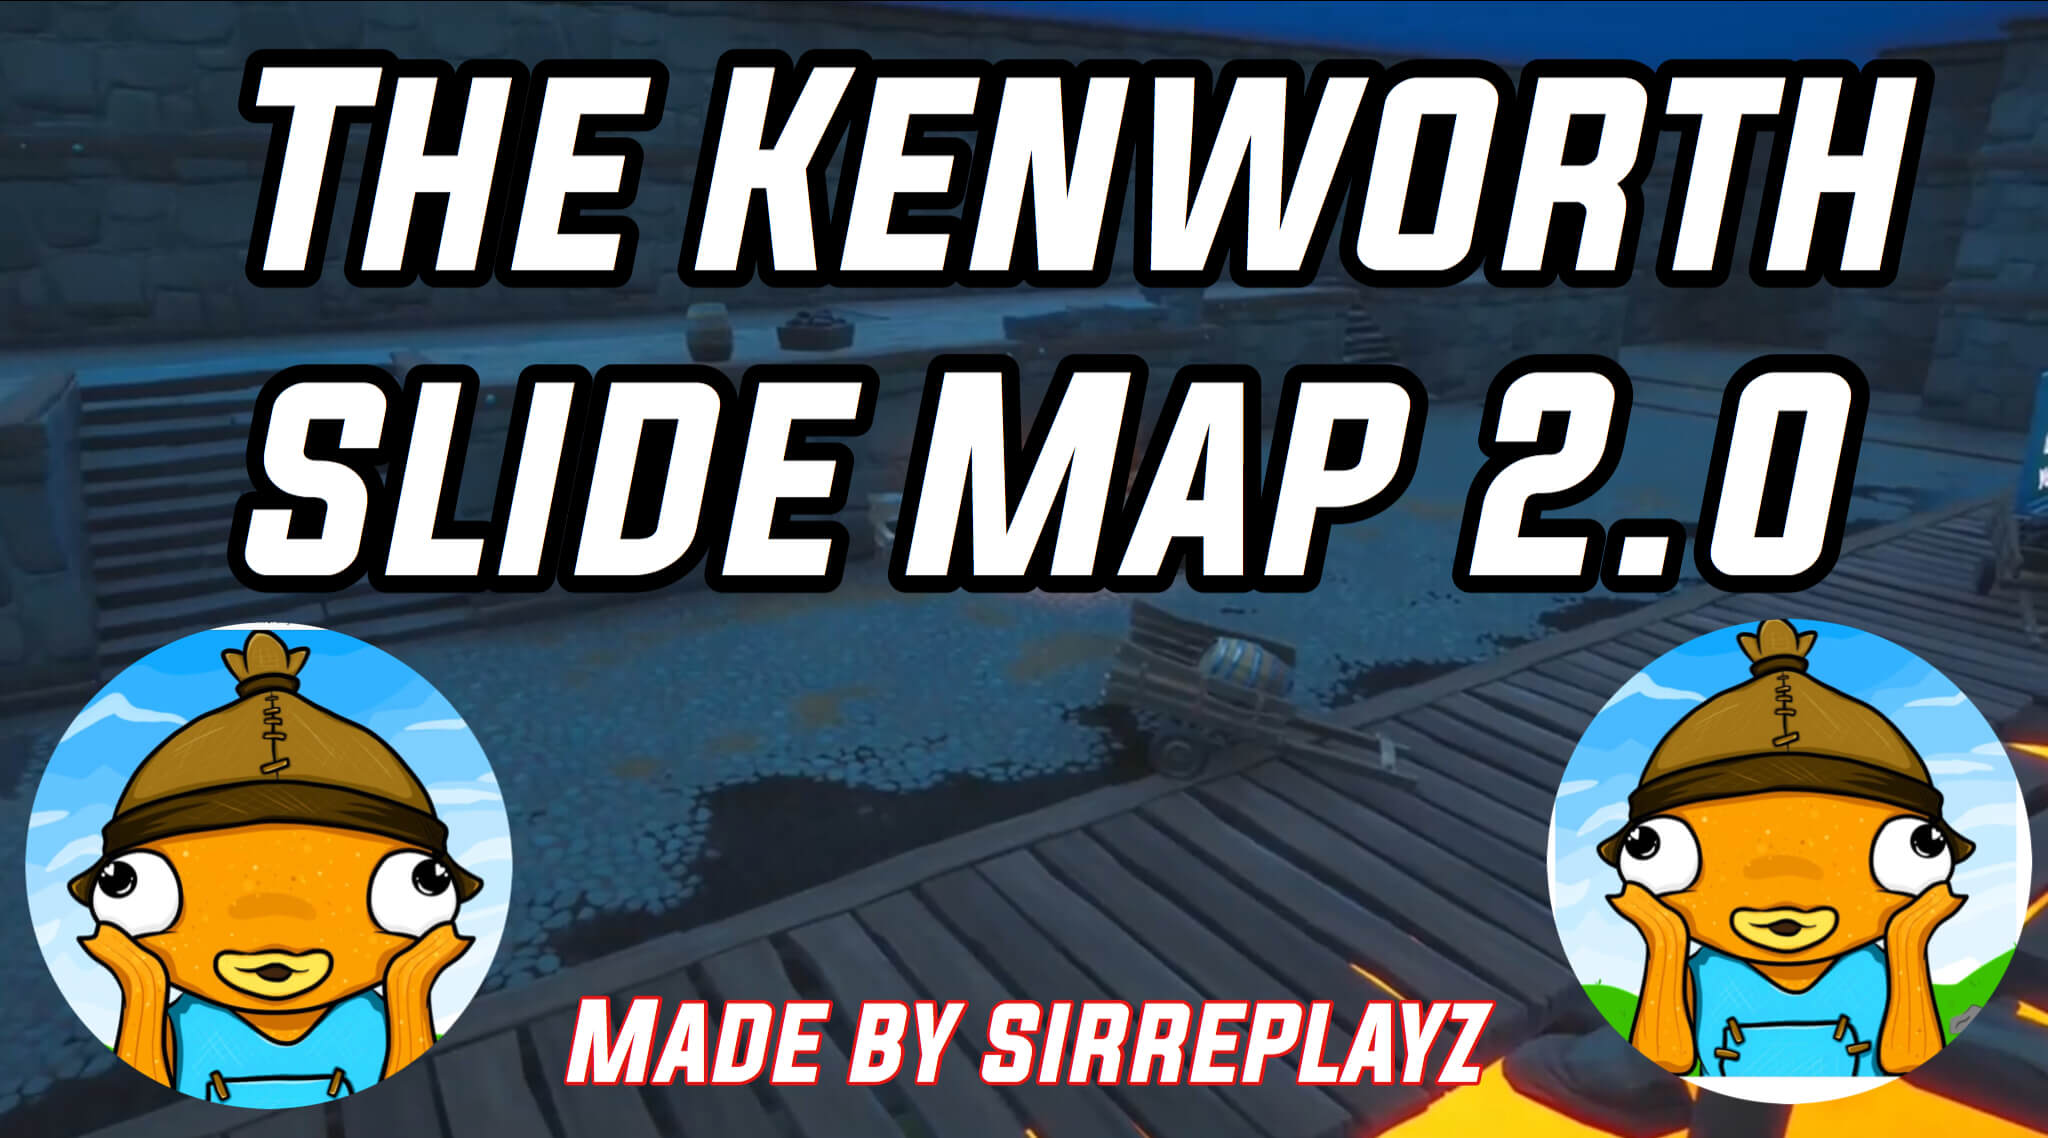 THE KENWORTH SLIDE MAP 2.0